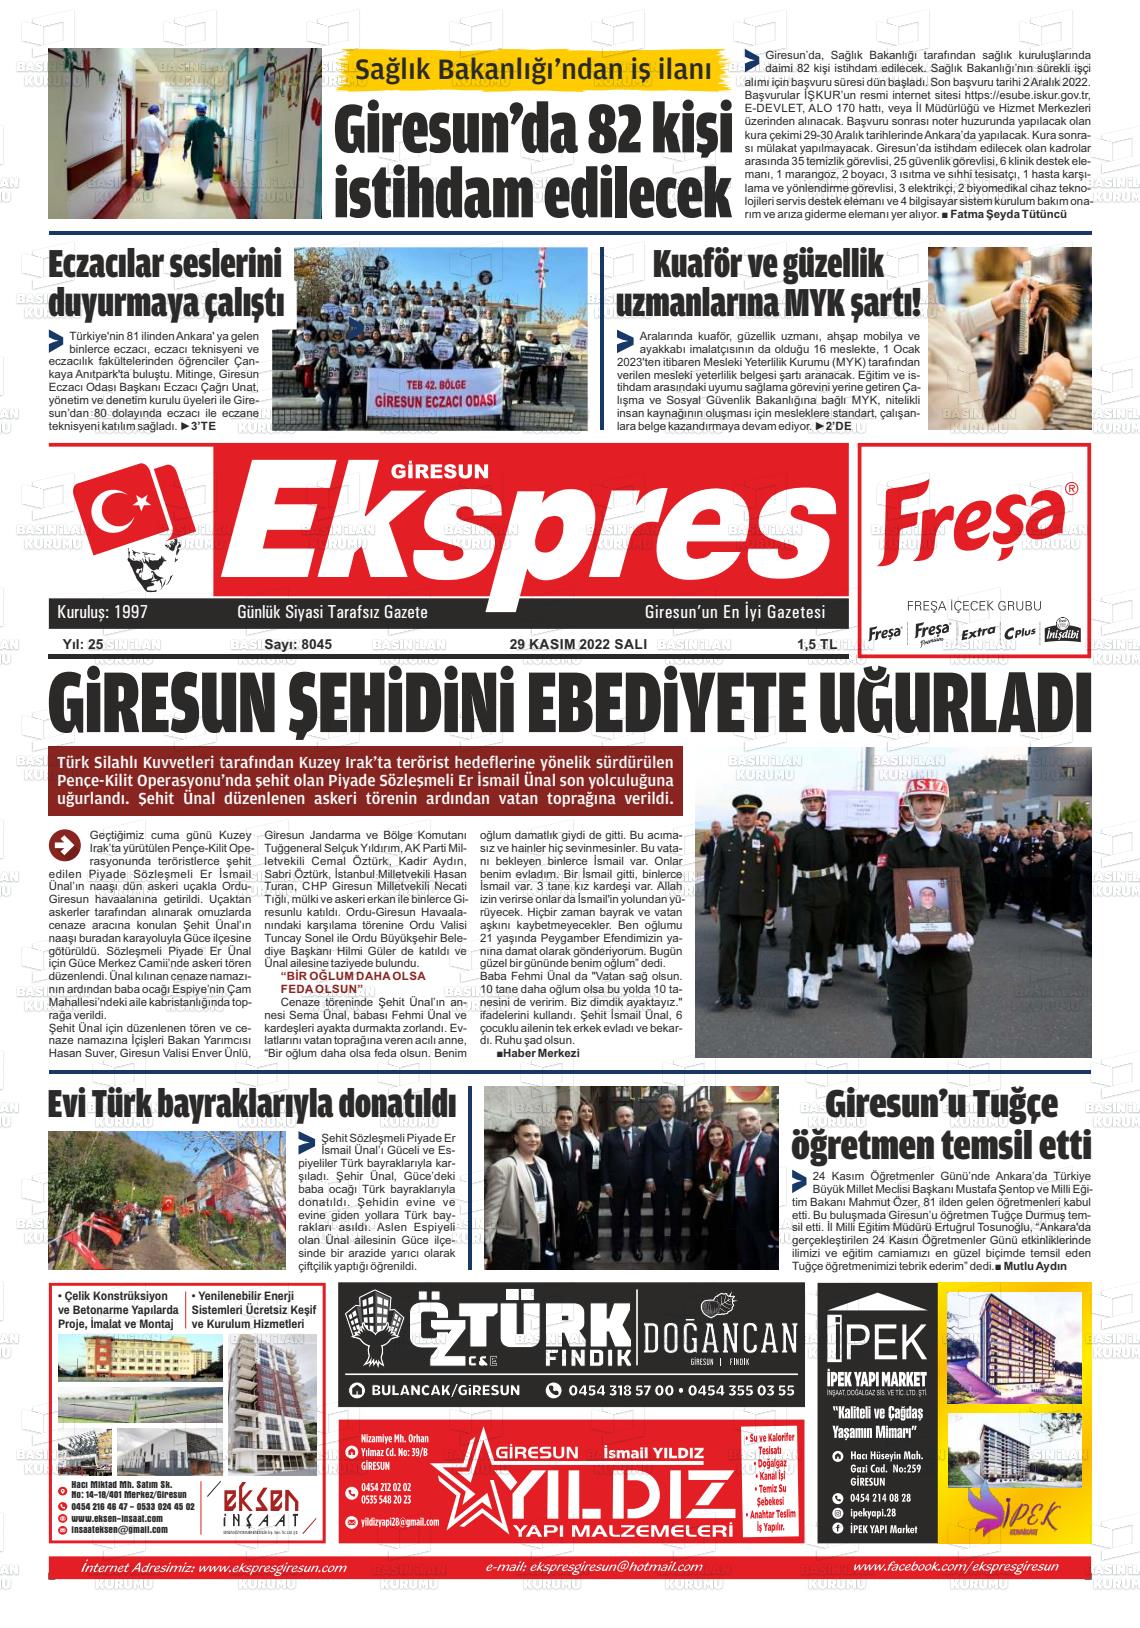 29 Kasım 2022 Giresun Ekspres Gazete Manşeti